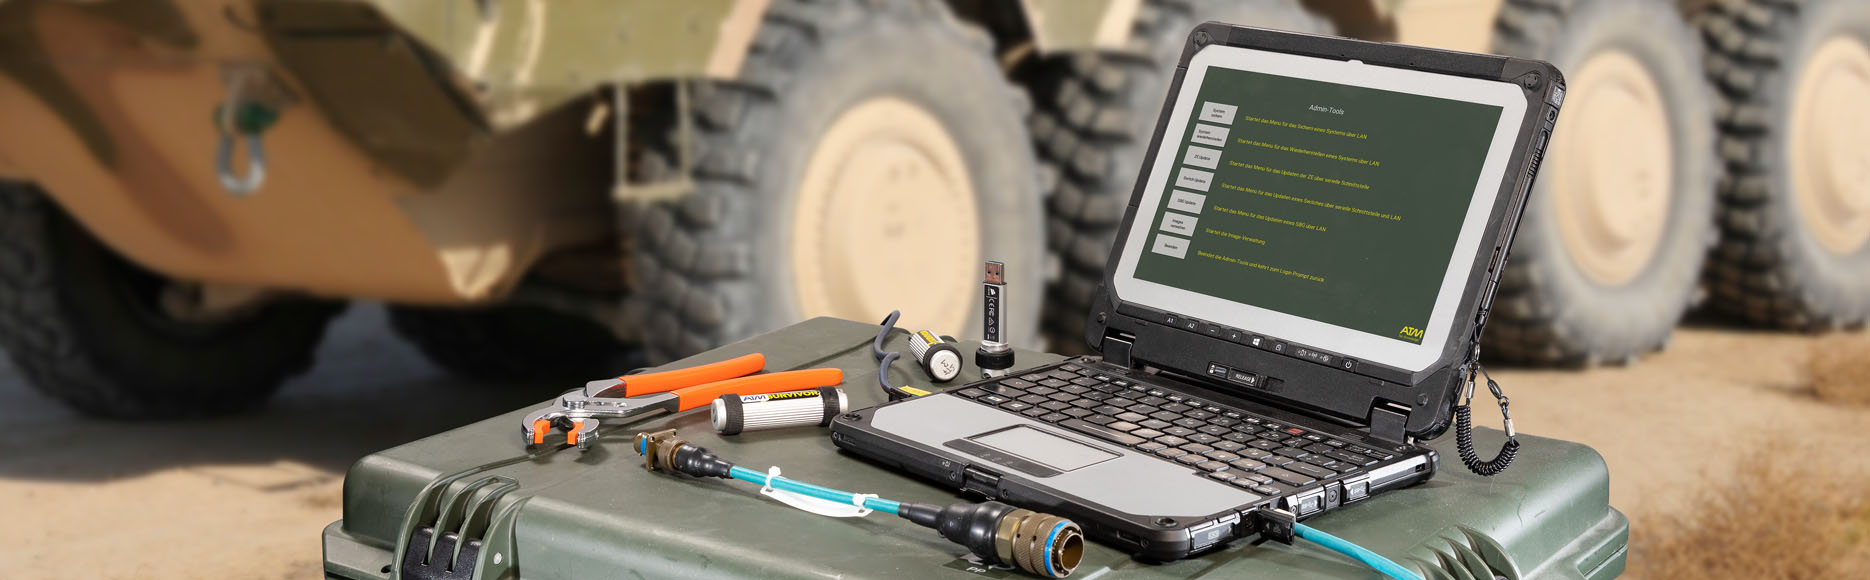 Laptop, Kabel und Werkzeug mit BOXER im Hintergrund